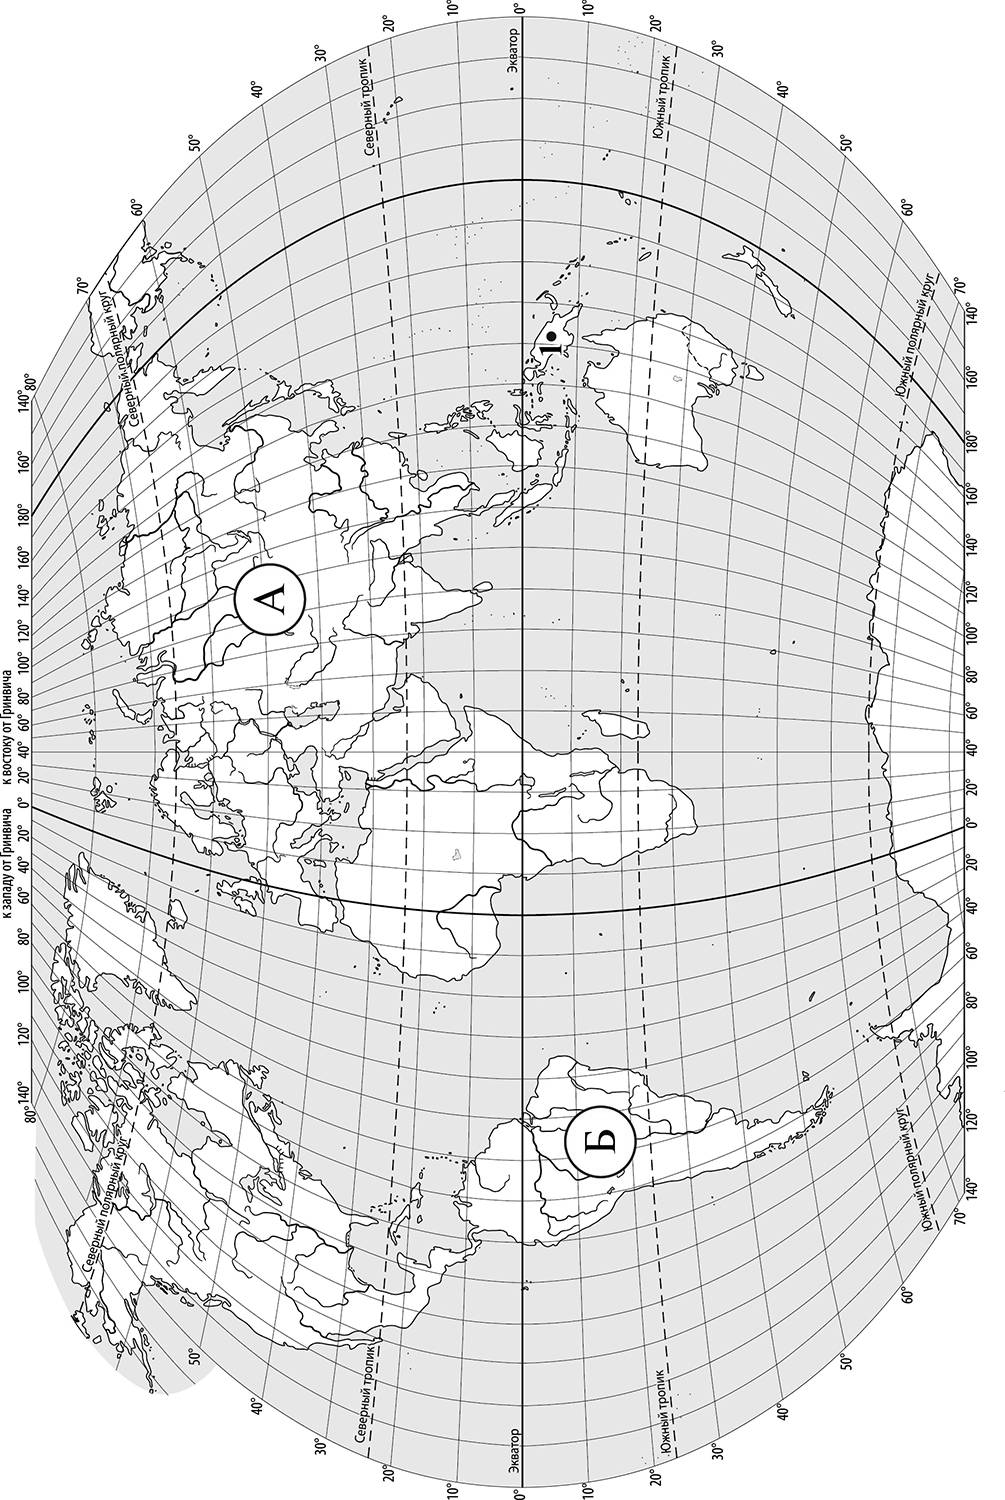 На карте буквами обозначены объекты тихий океан. ВПР 2021 география. Задания ВПР по географии 6 класс. Карта материков из ВПР по географии.